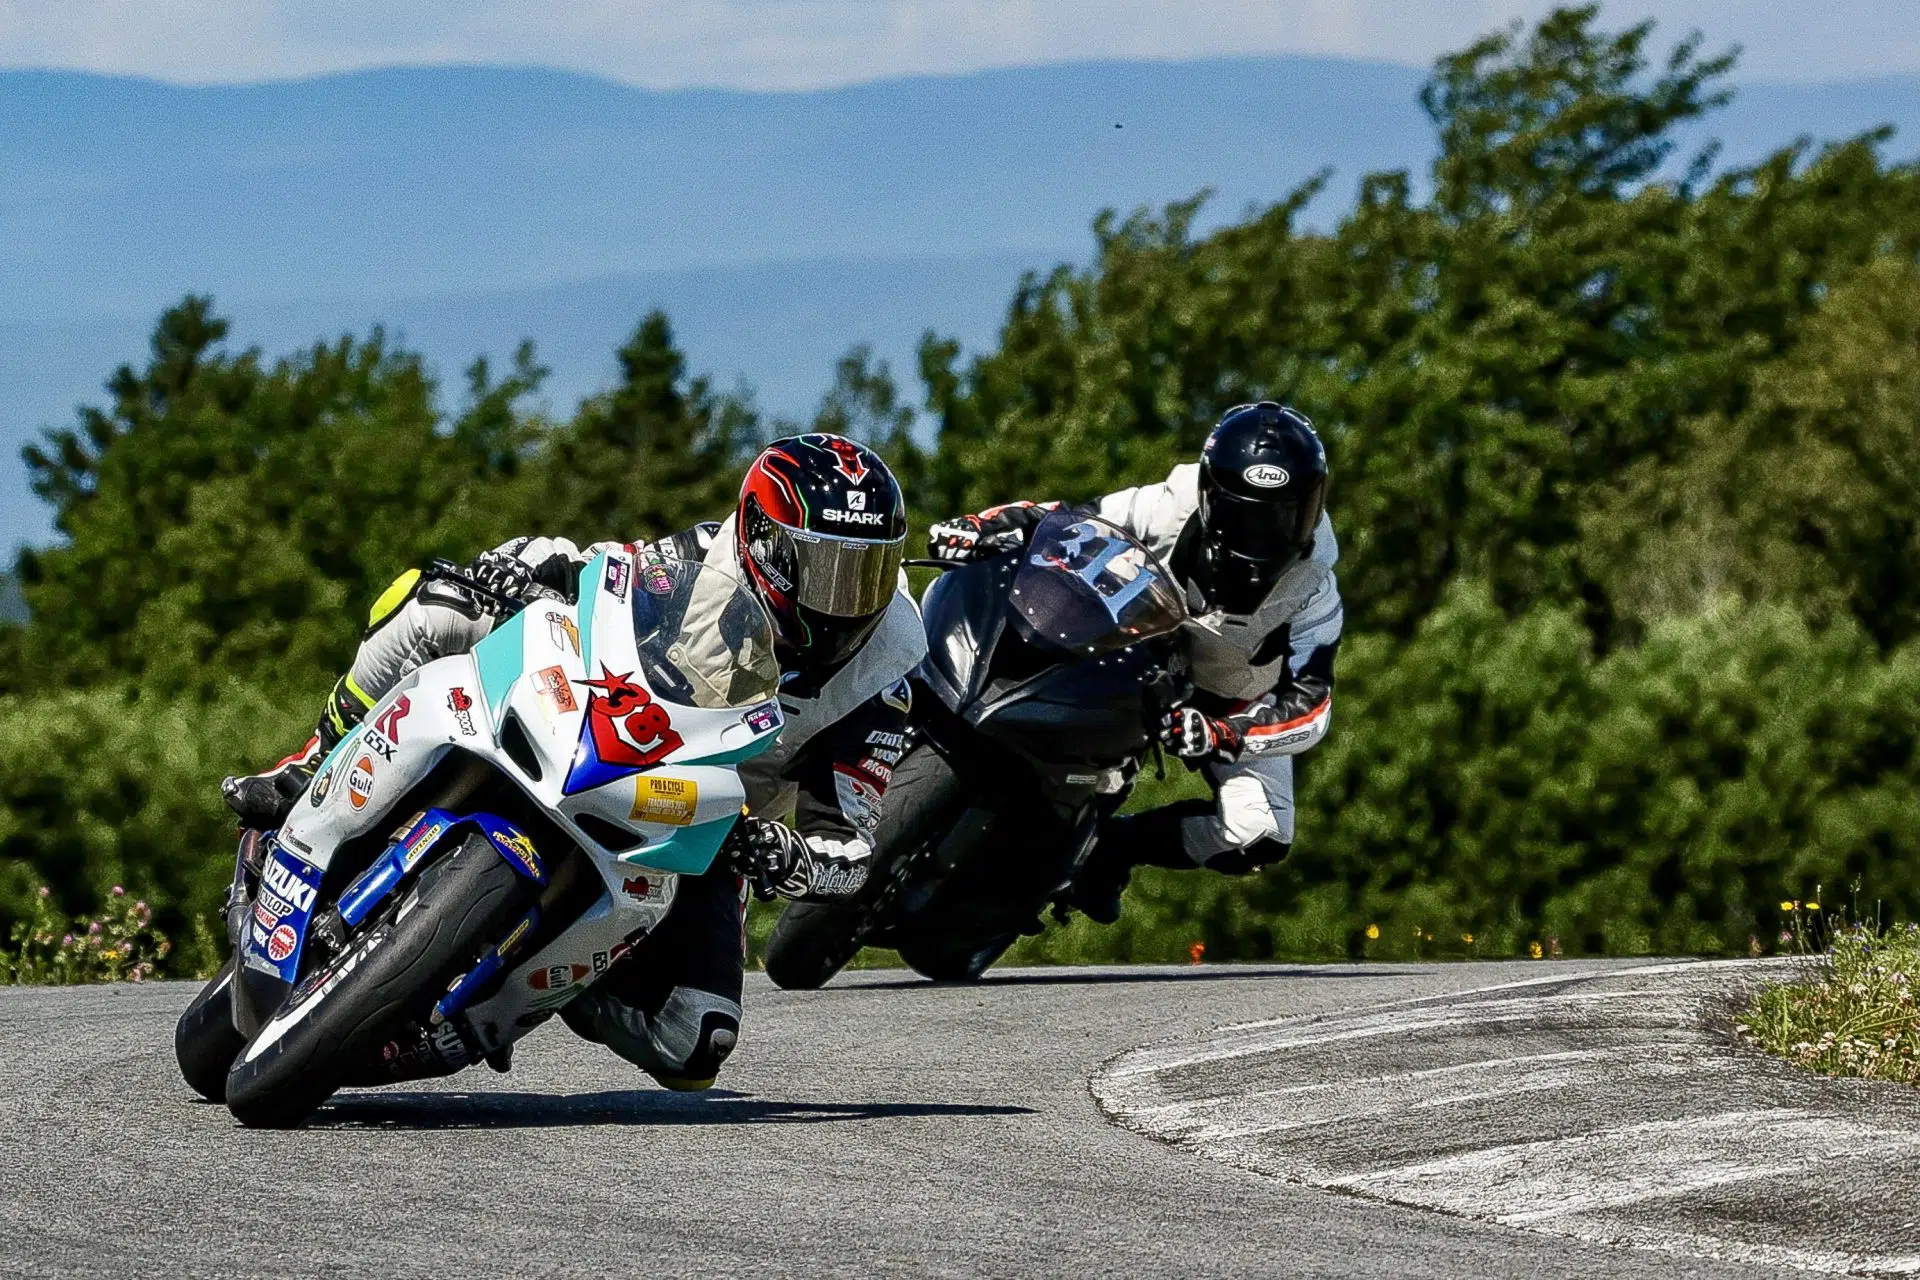 Les motos Supersport, de la route à la piste...(Eve Lyne)